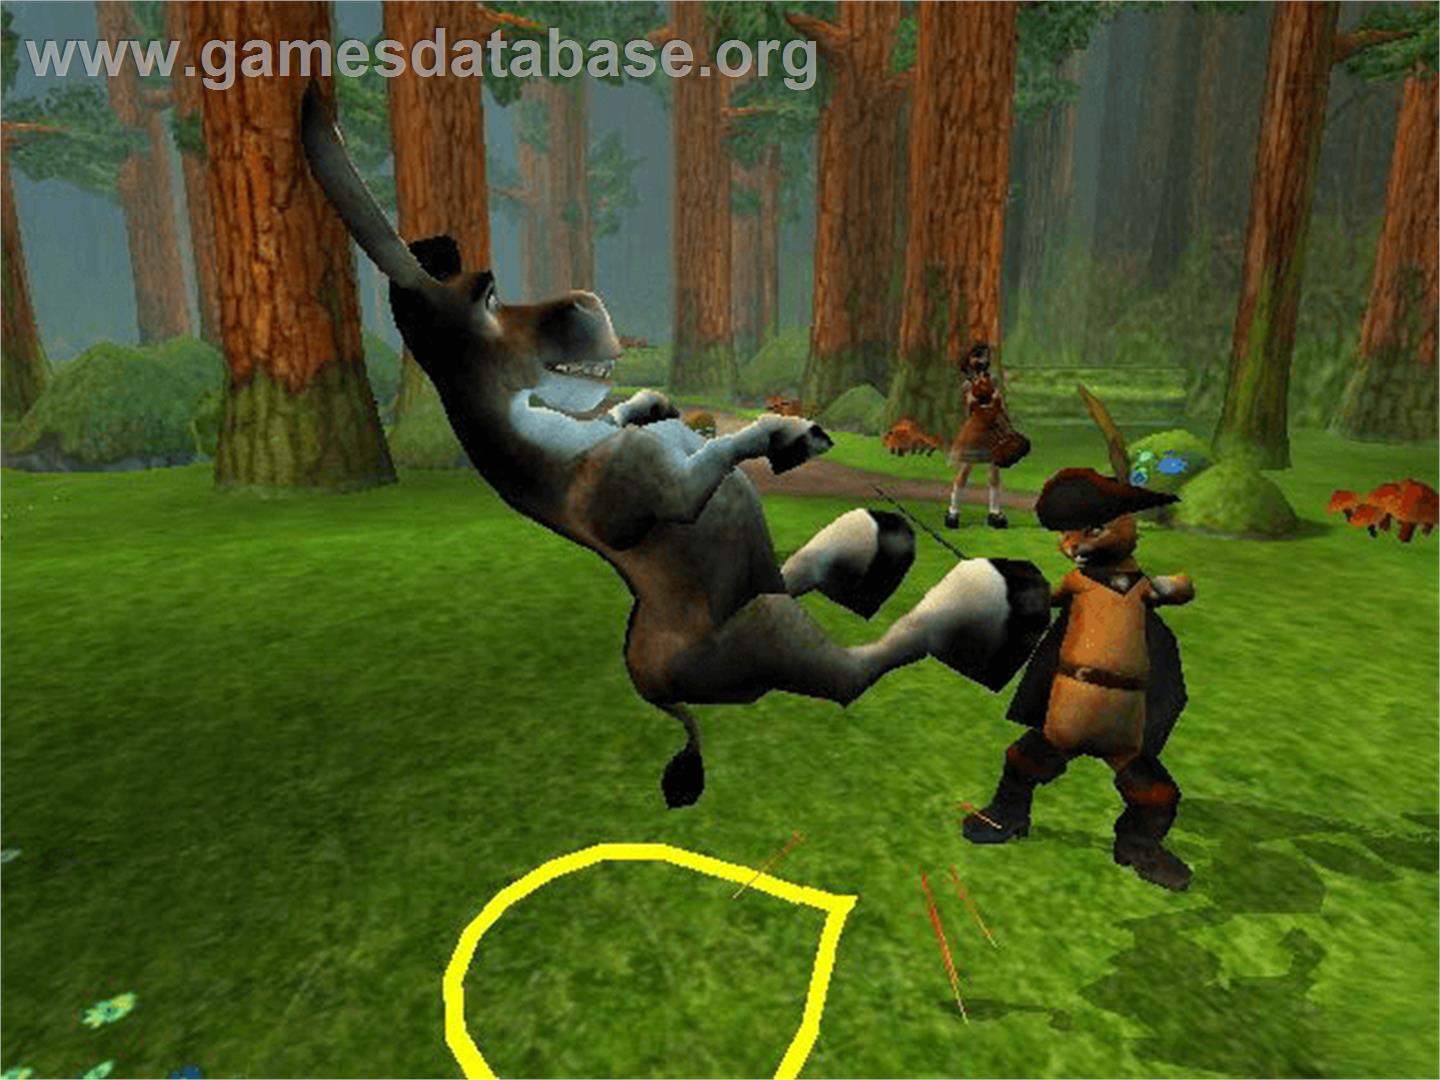 Shrek 2 - Microsoft Xbox - Artwork - In Game